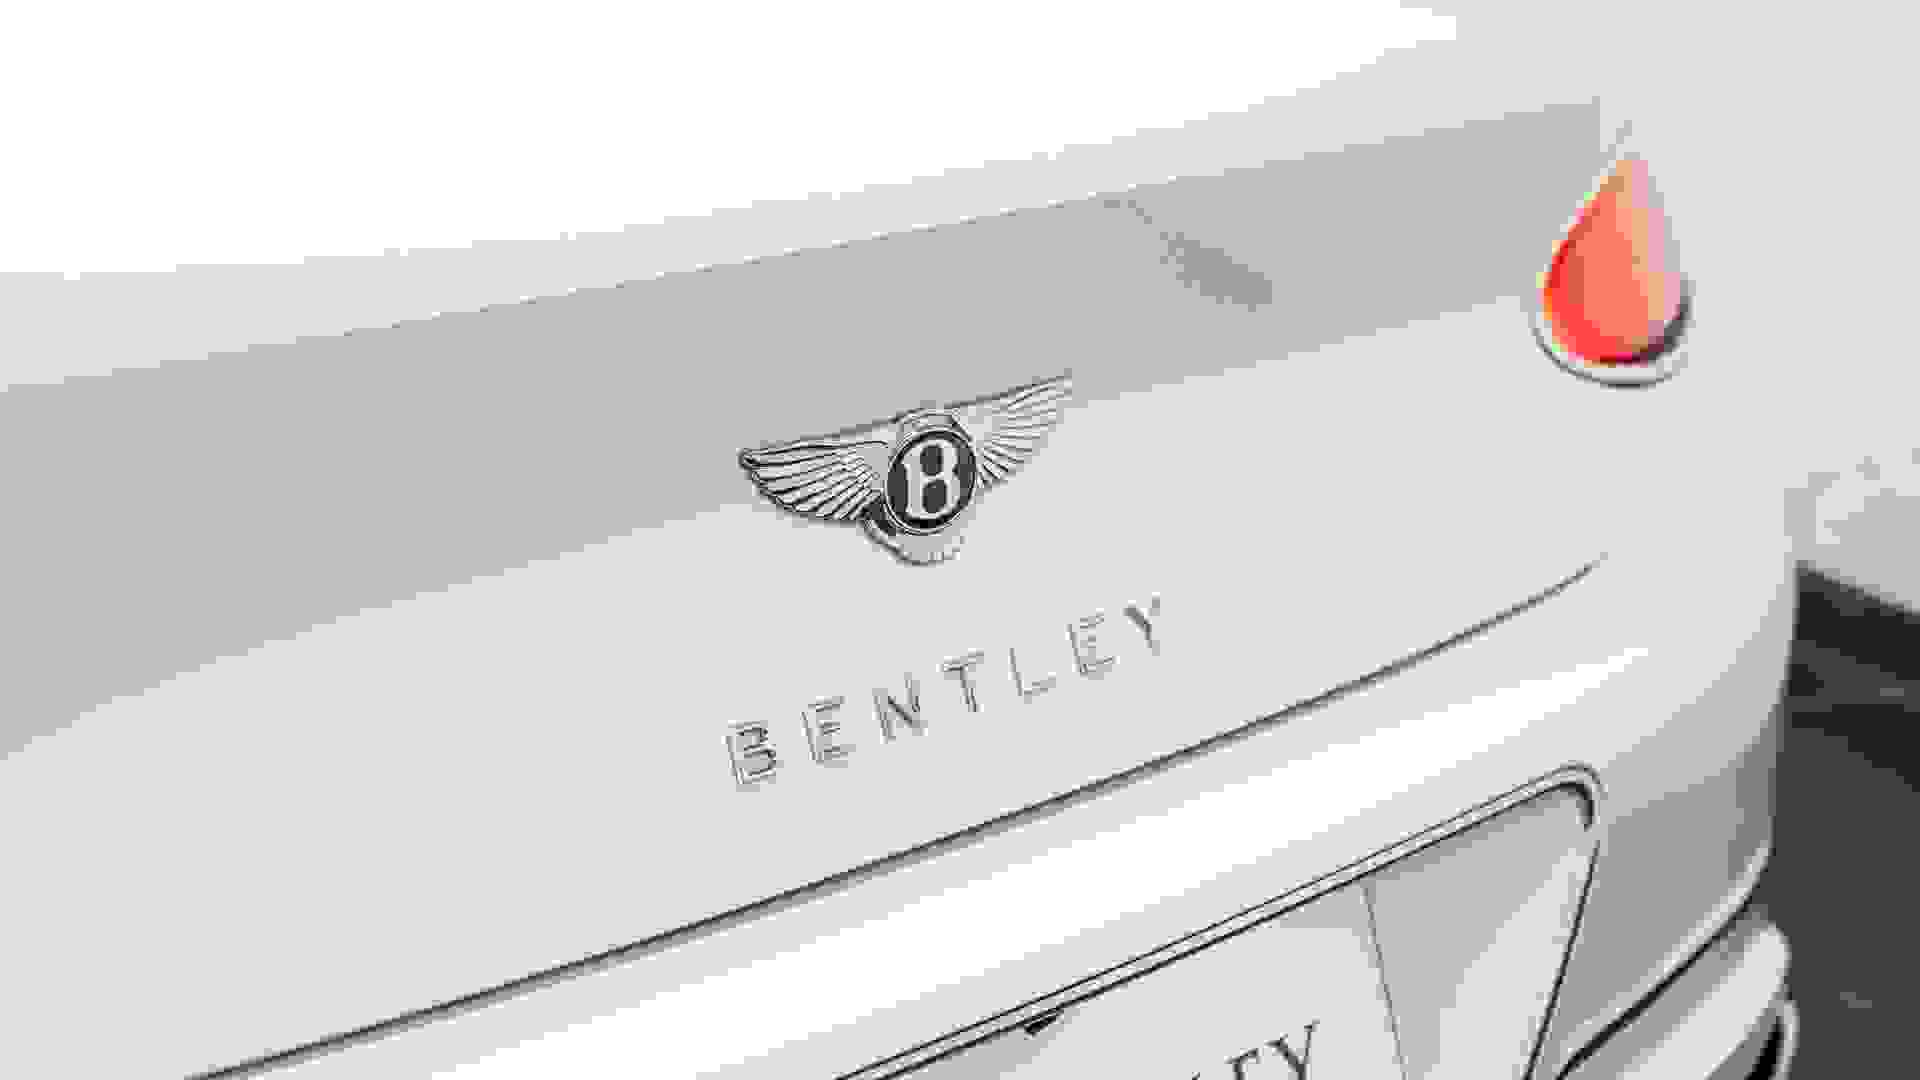 Bentley Continental GTC Photo 195d4f17-91e1-4117-8f51-6a2e24cafab0.jpg